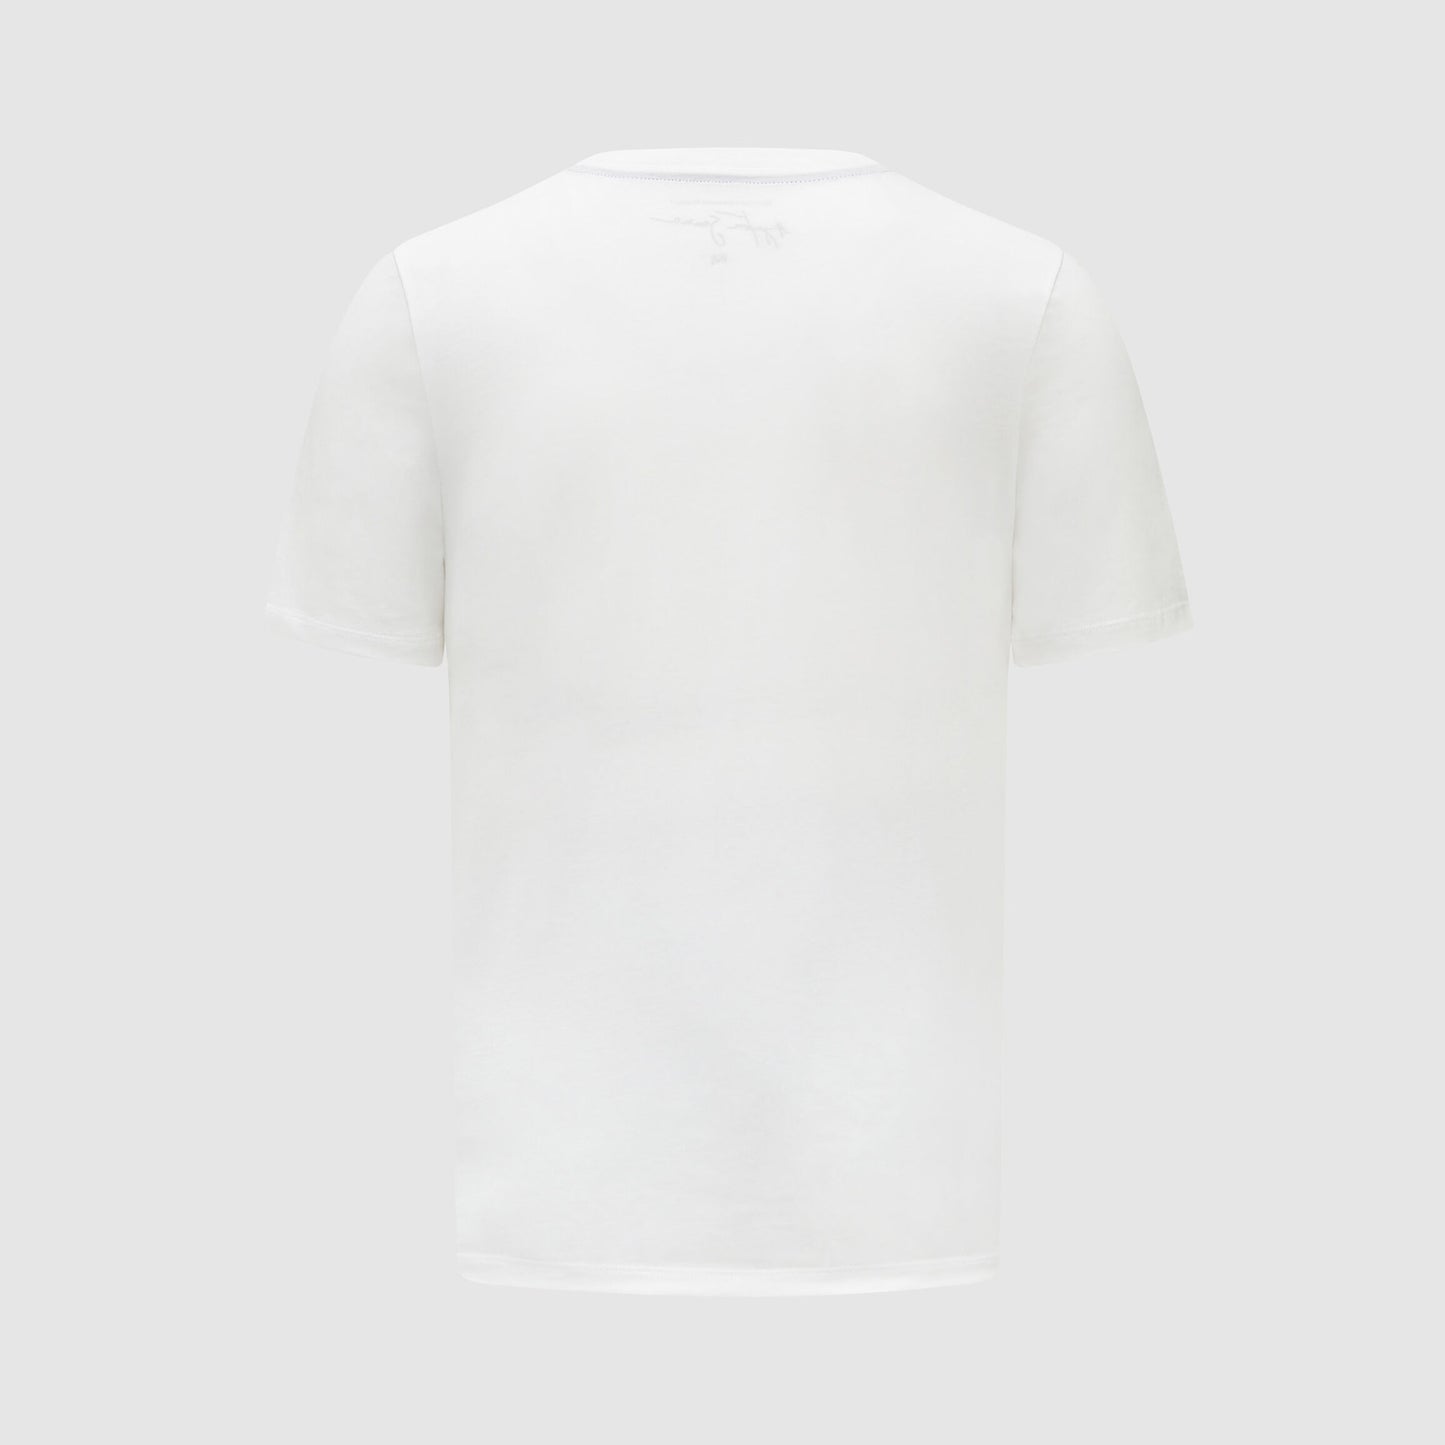 [Pre-Order] Ayrton Senna Busque T-shirt (2 Colours)